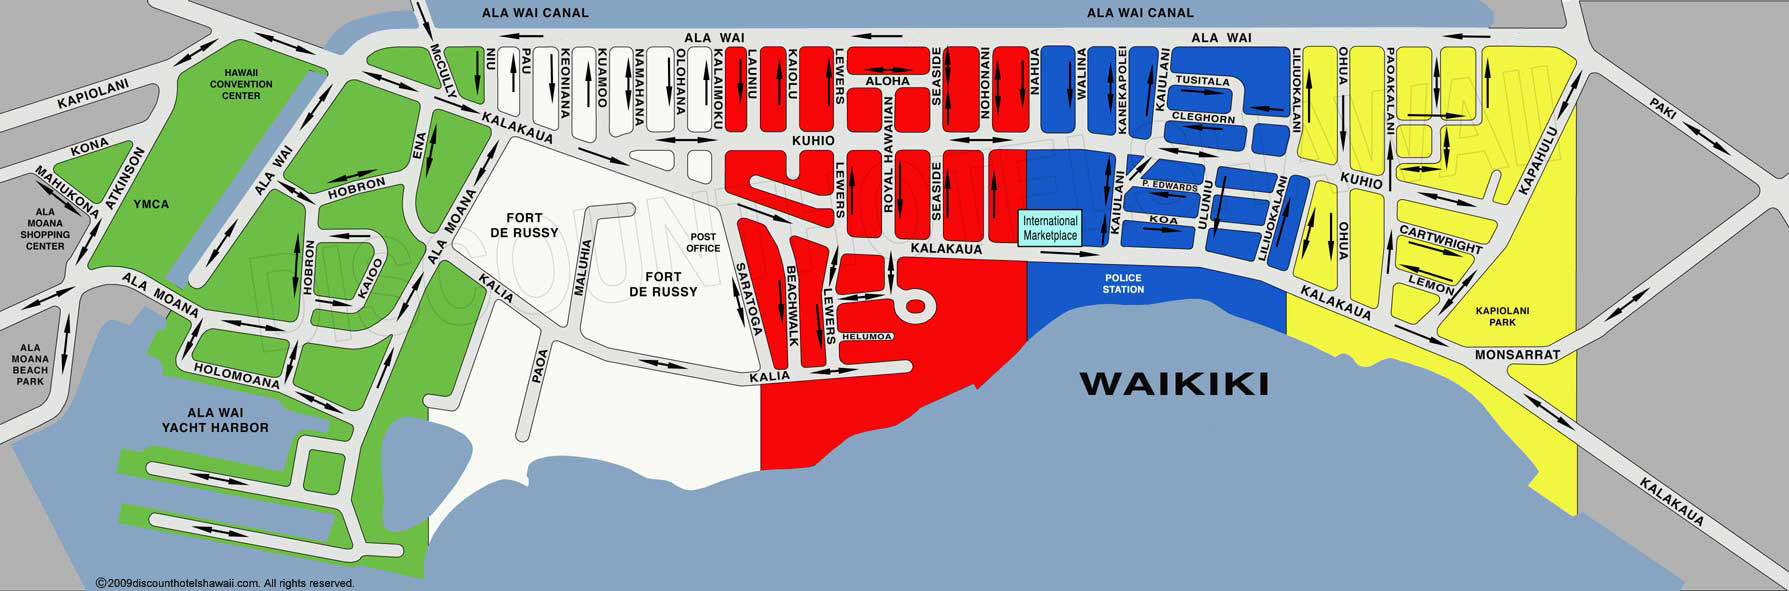 Waikiki Street Map